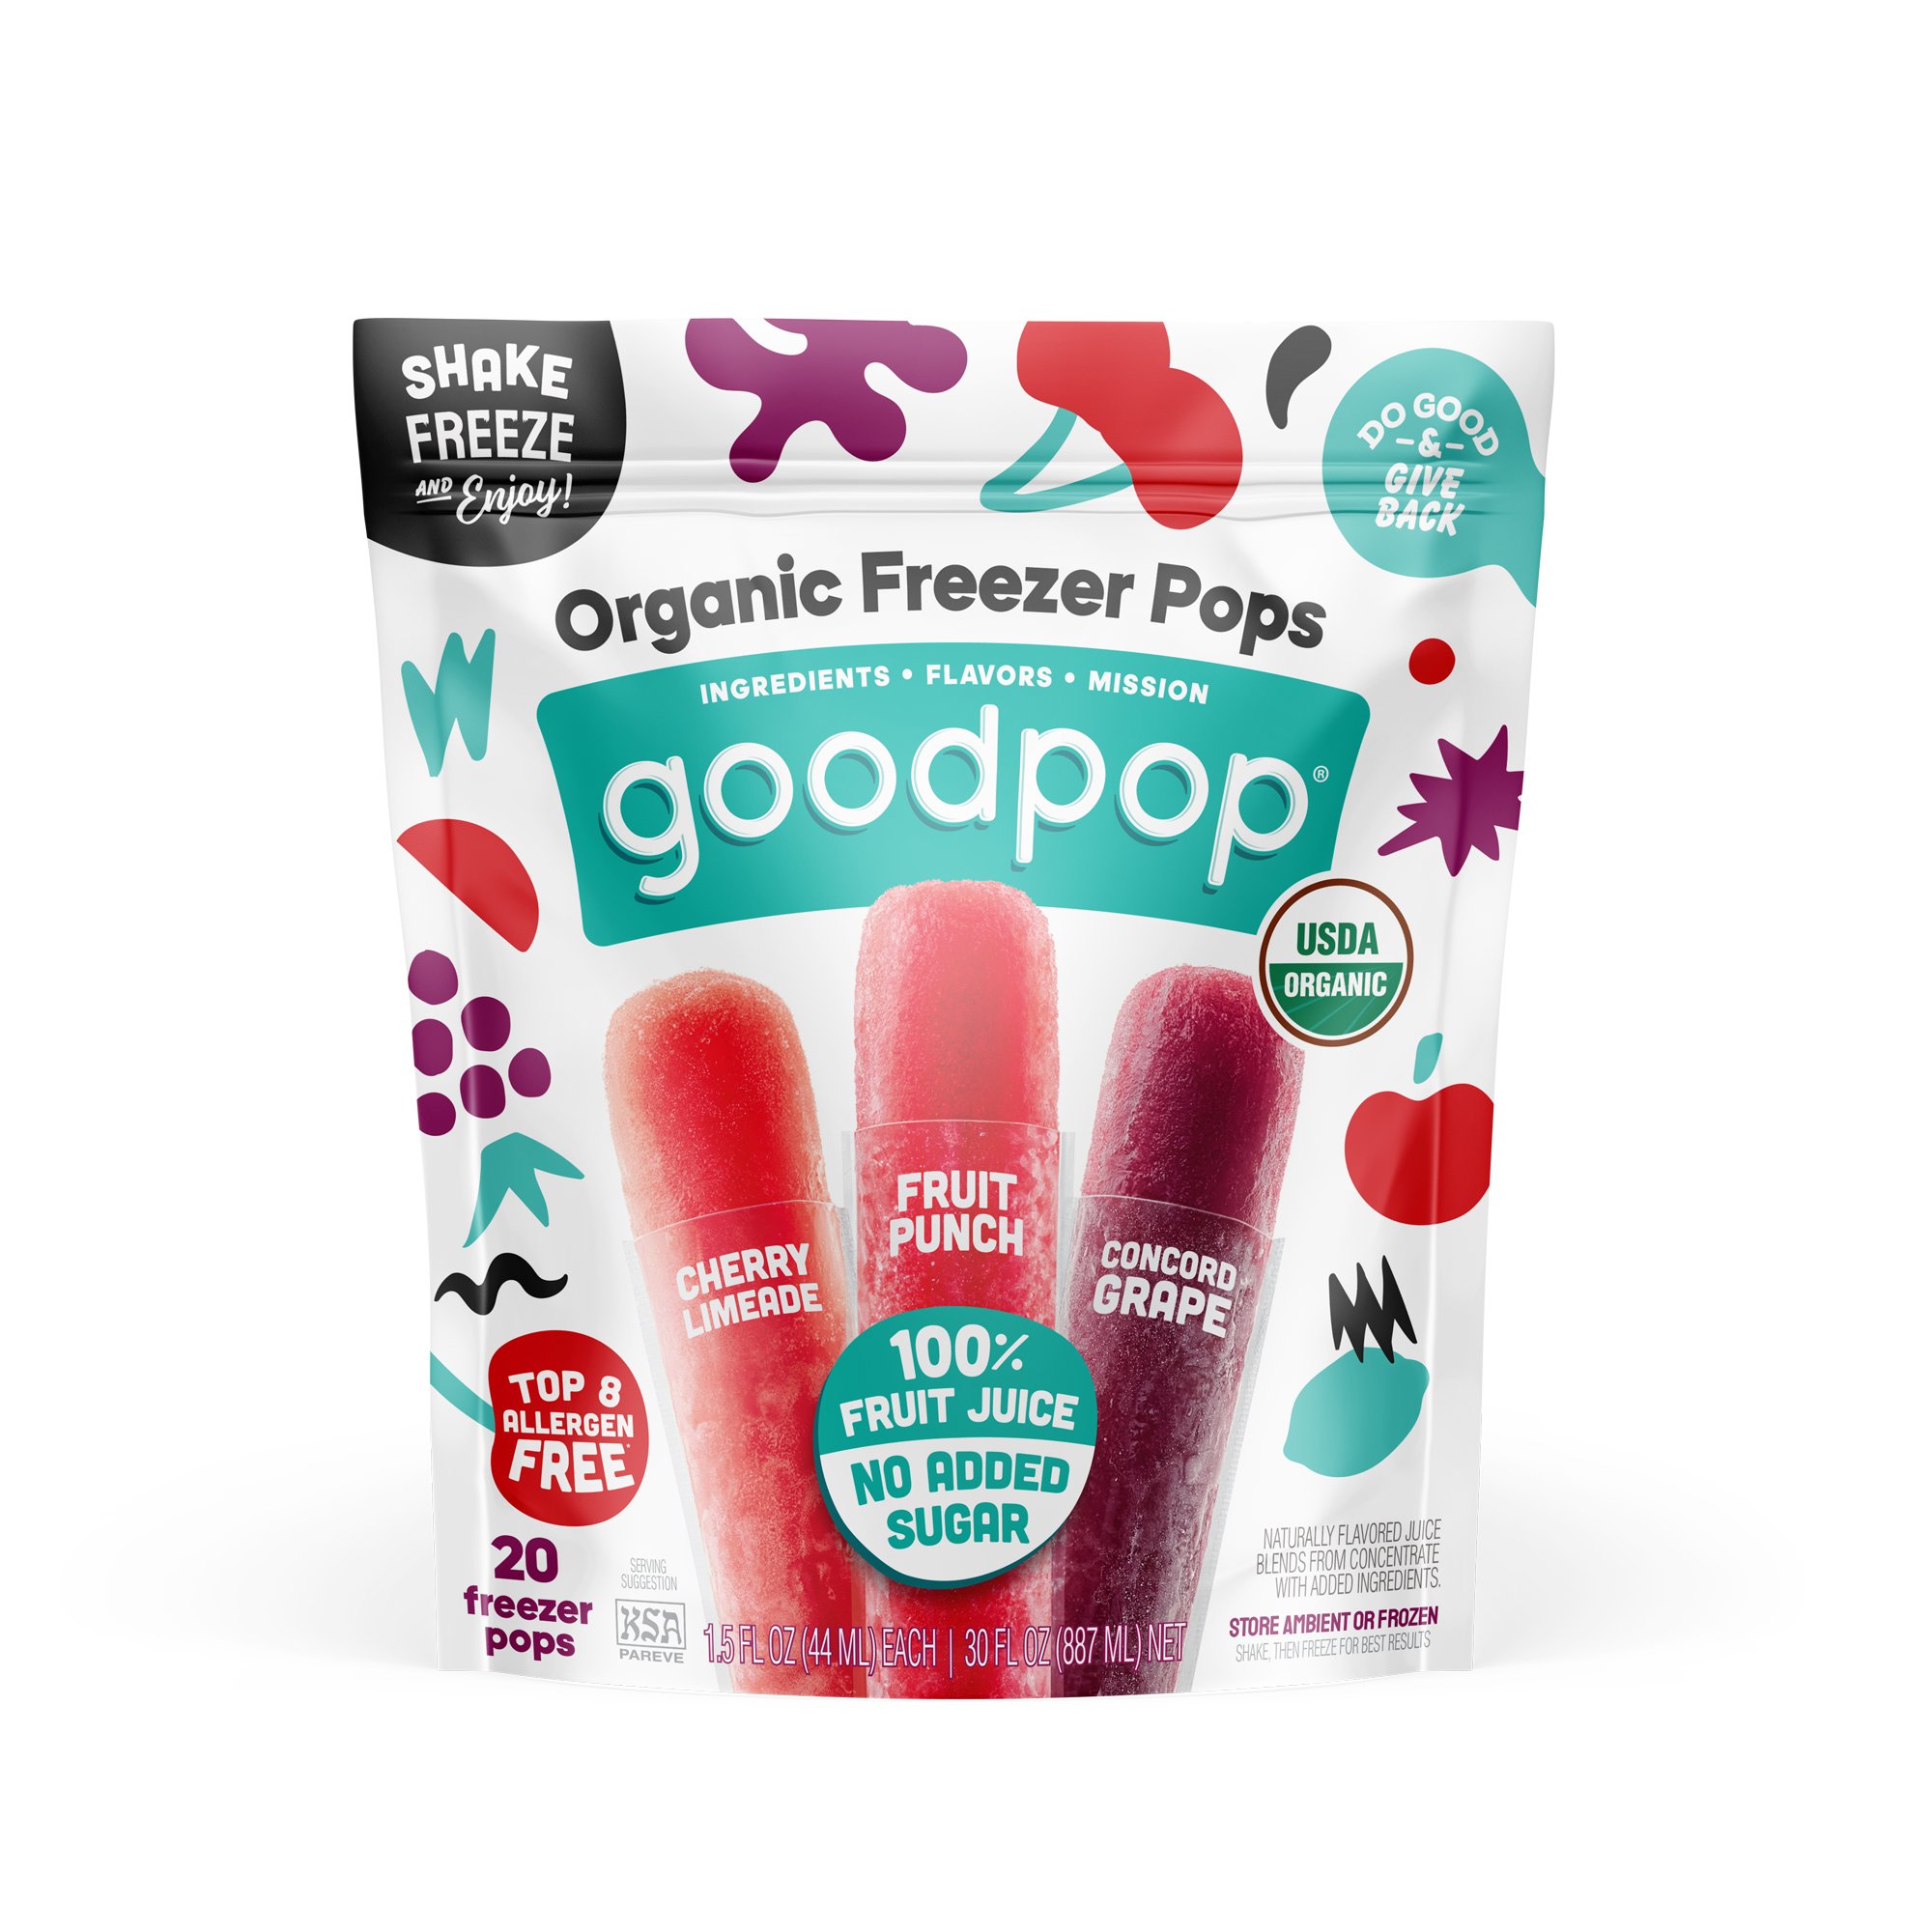 GoodPop 100% Fruit Juice Organic Freezer Pops